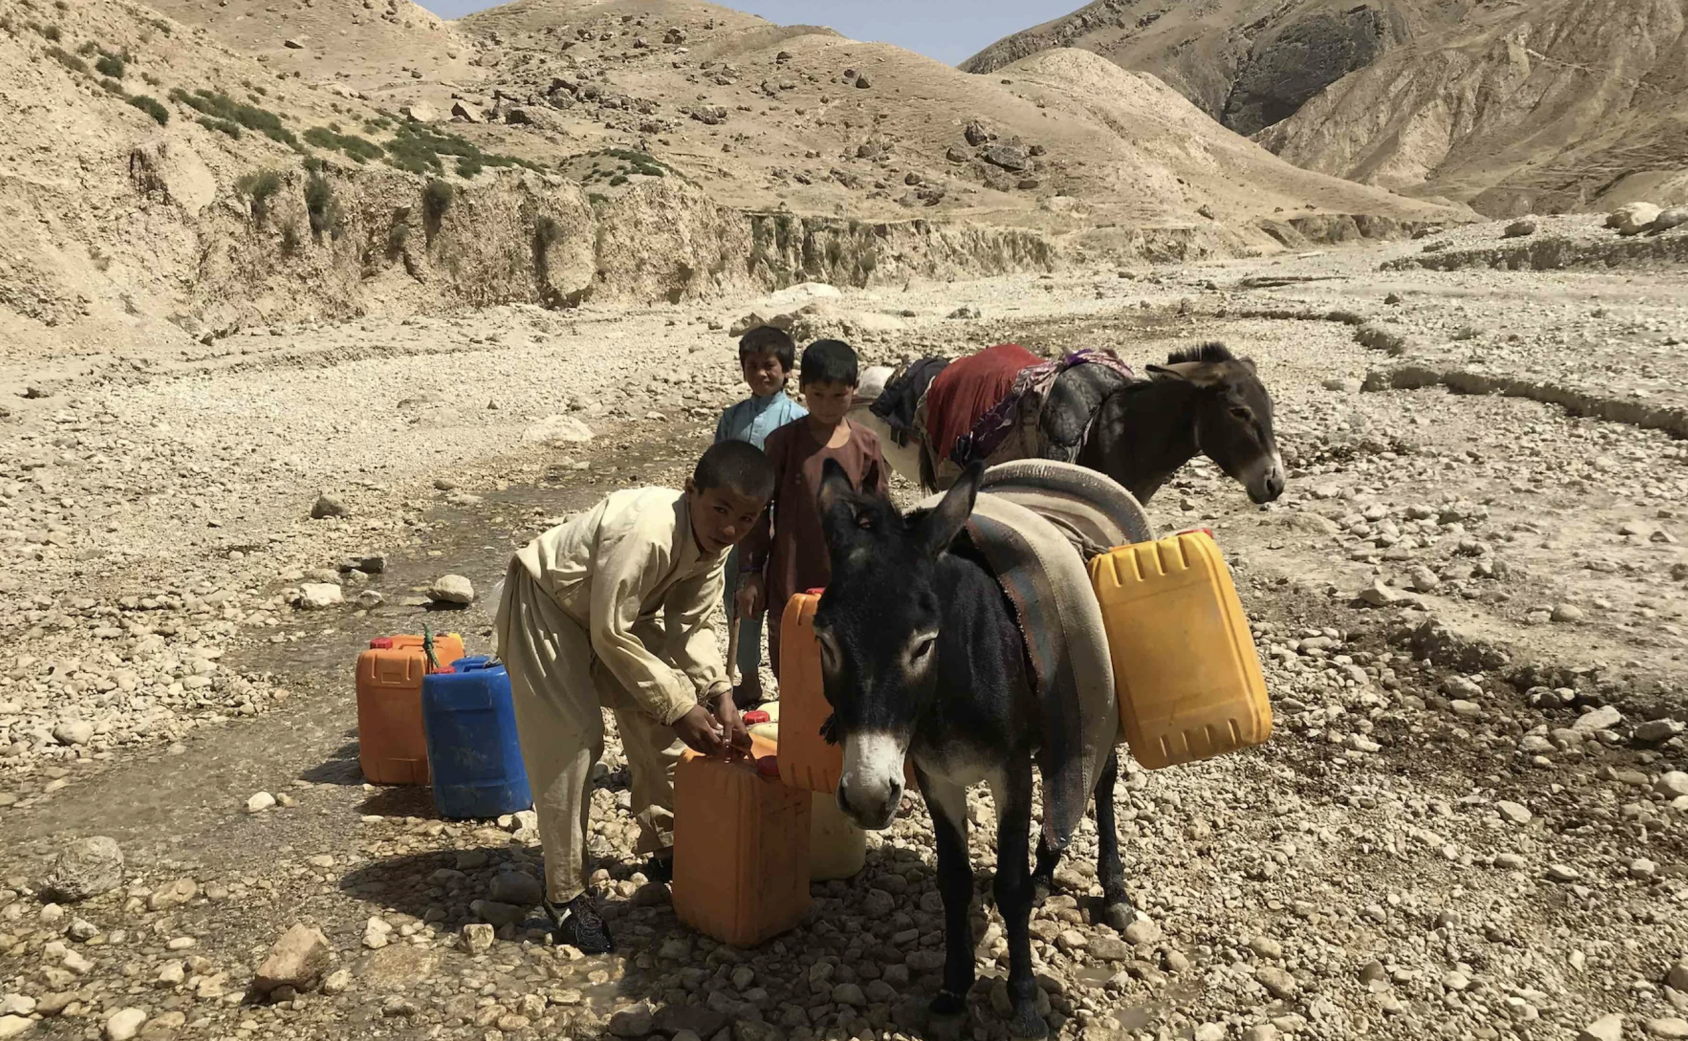 Los chicos transportan agua en cántaros sobre mulas.